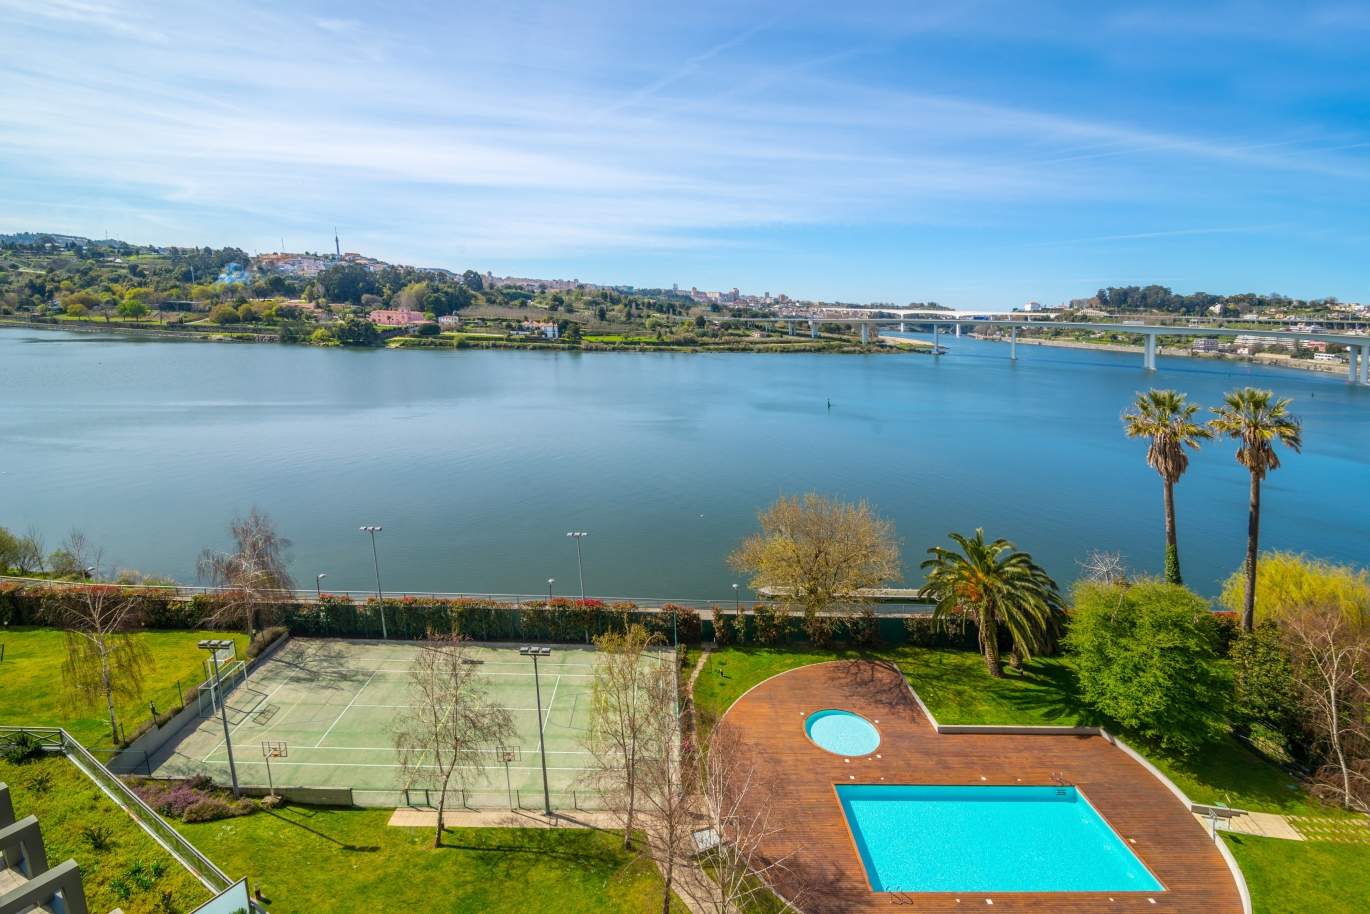 Verkauf Wohnung mit Blick auf den Fluss in Luxus-Eigentumswohnung, Porto, Portugal_99617